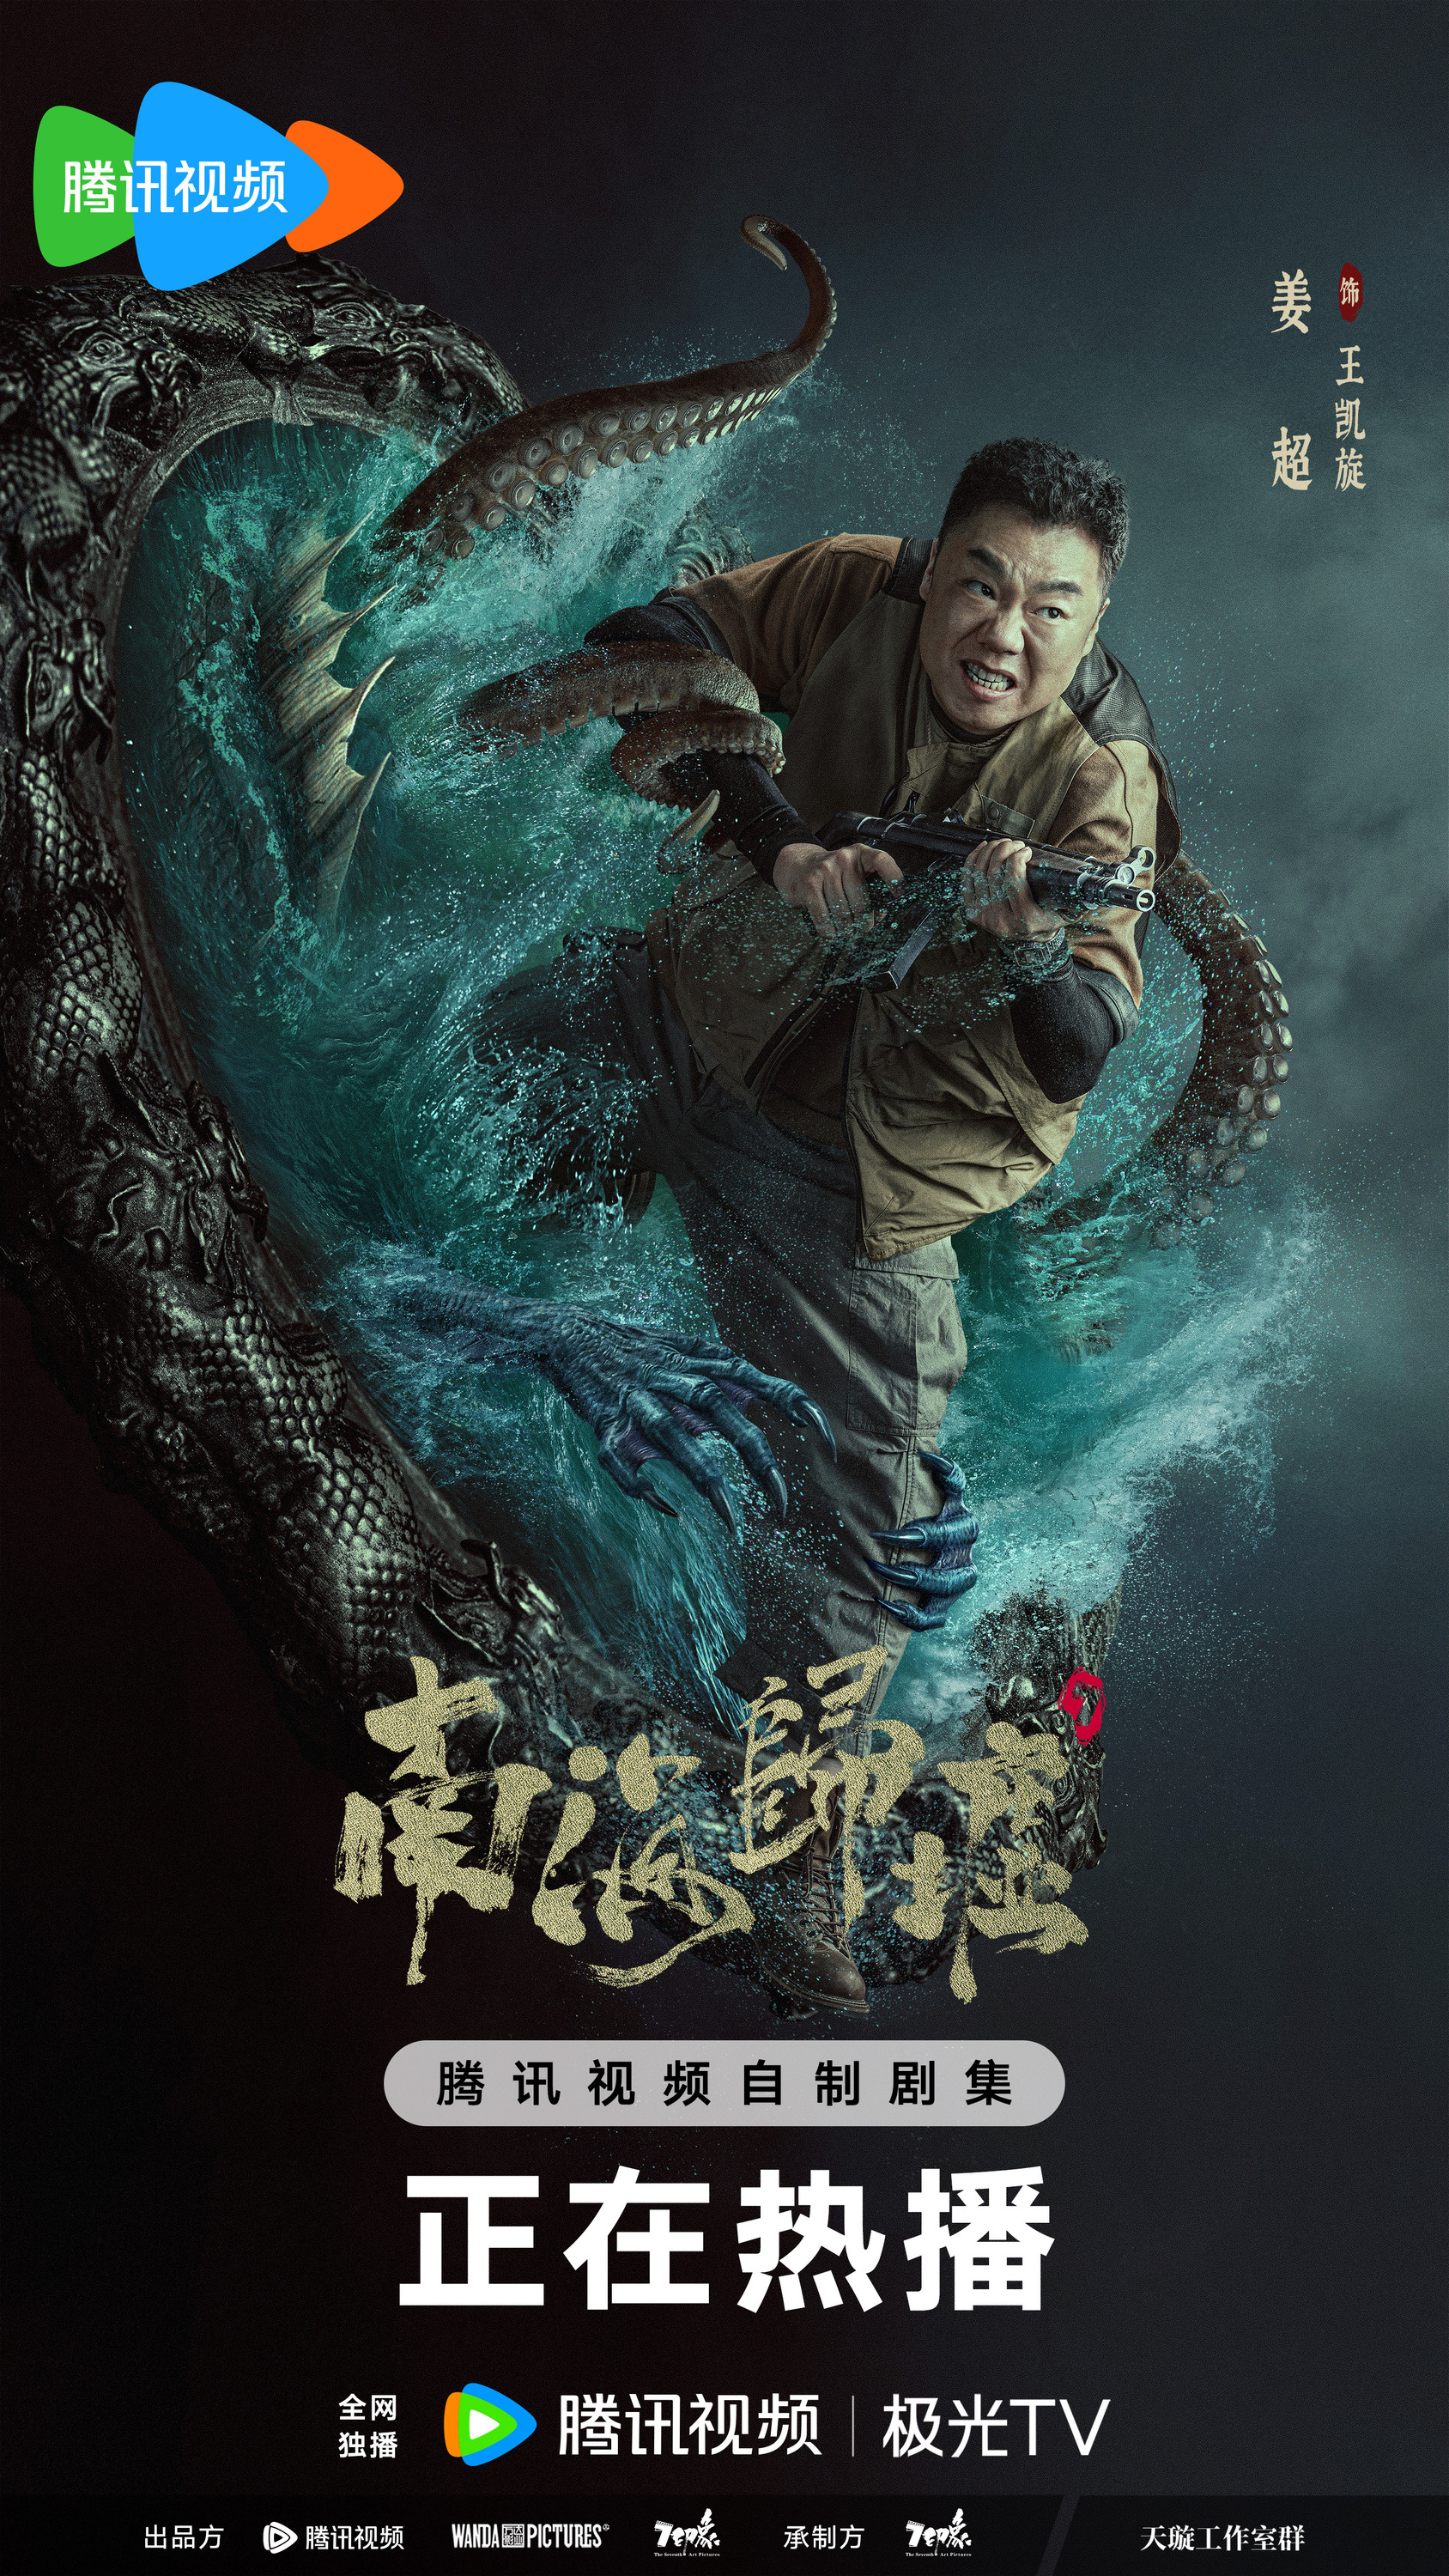 Mega Sized TV Poster Image for Nan hai gui xu (#1 of 6)